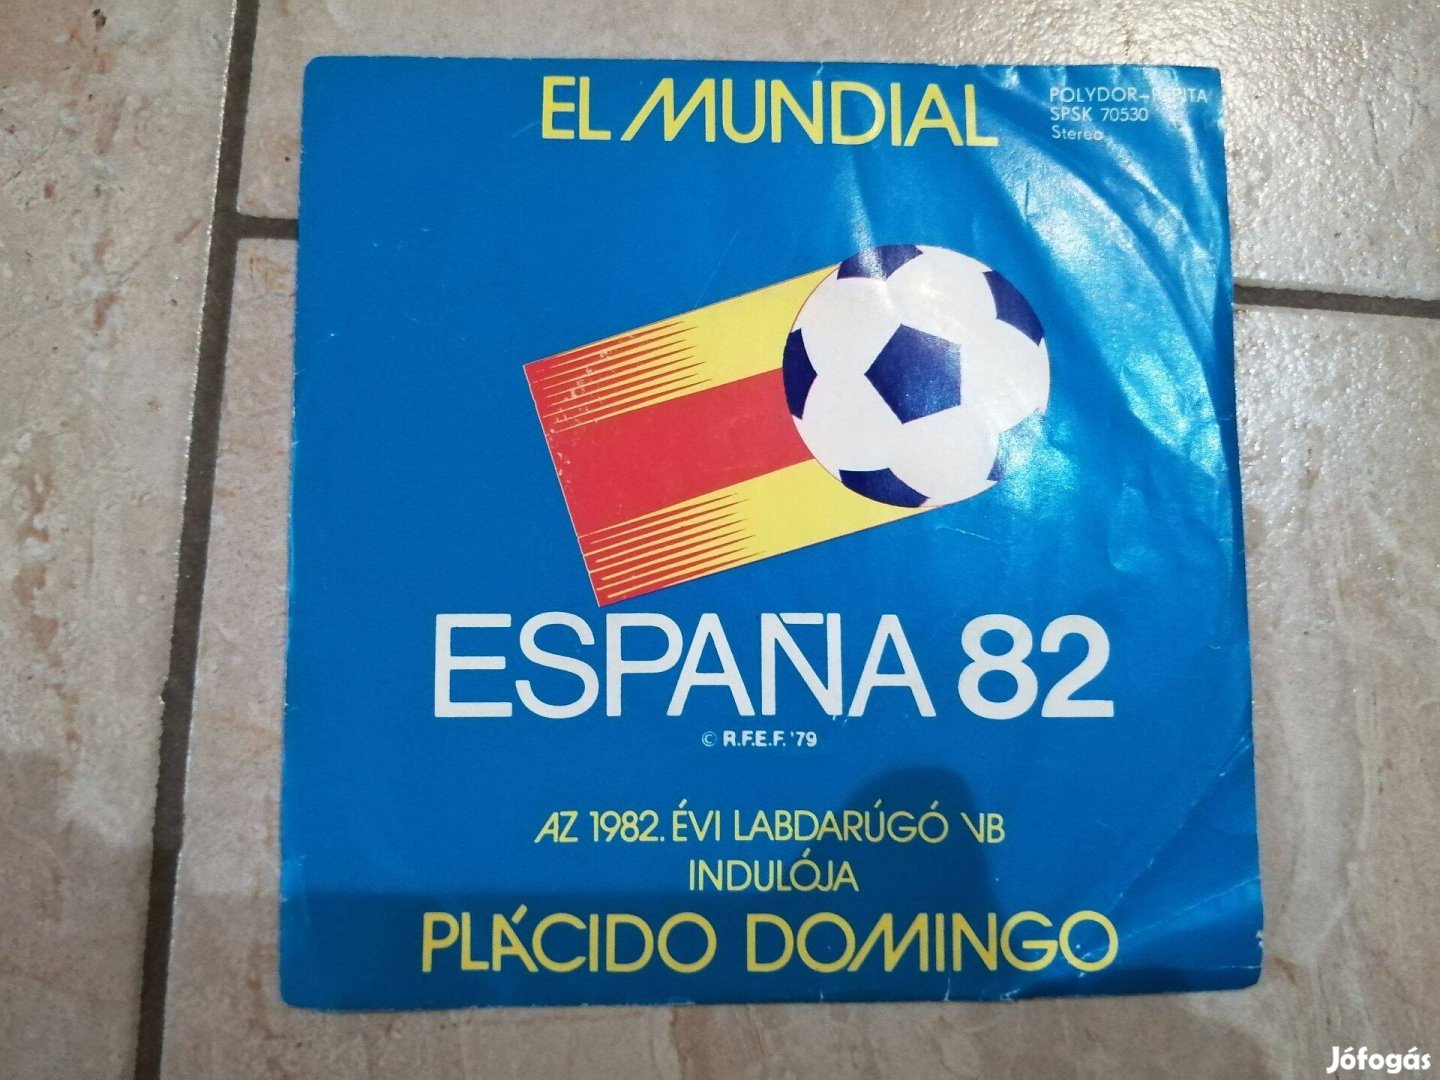 El Mundial-Espana 82 - Bakelit kislemez különlegesség (VB induló Place